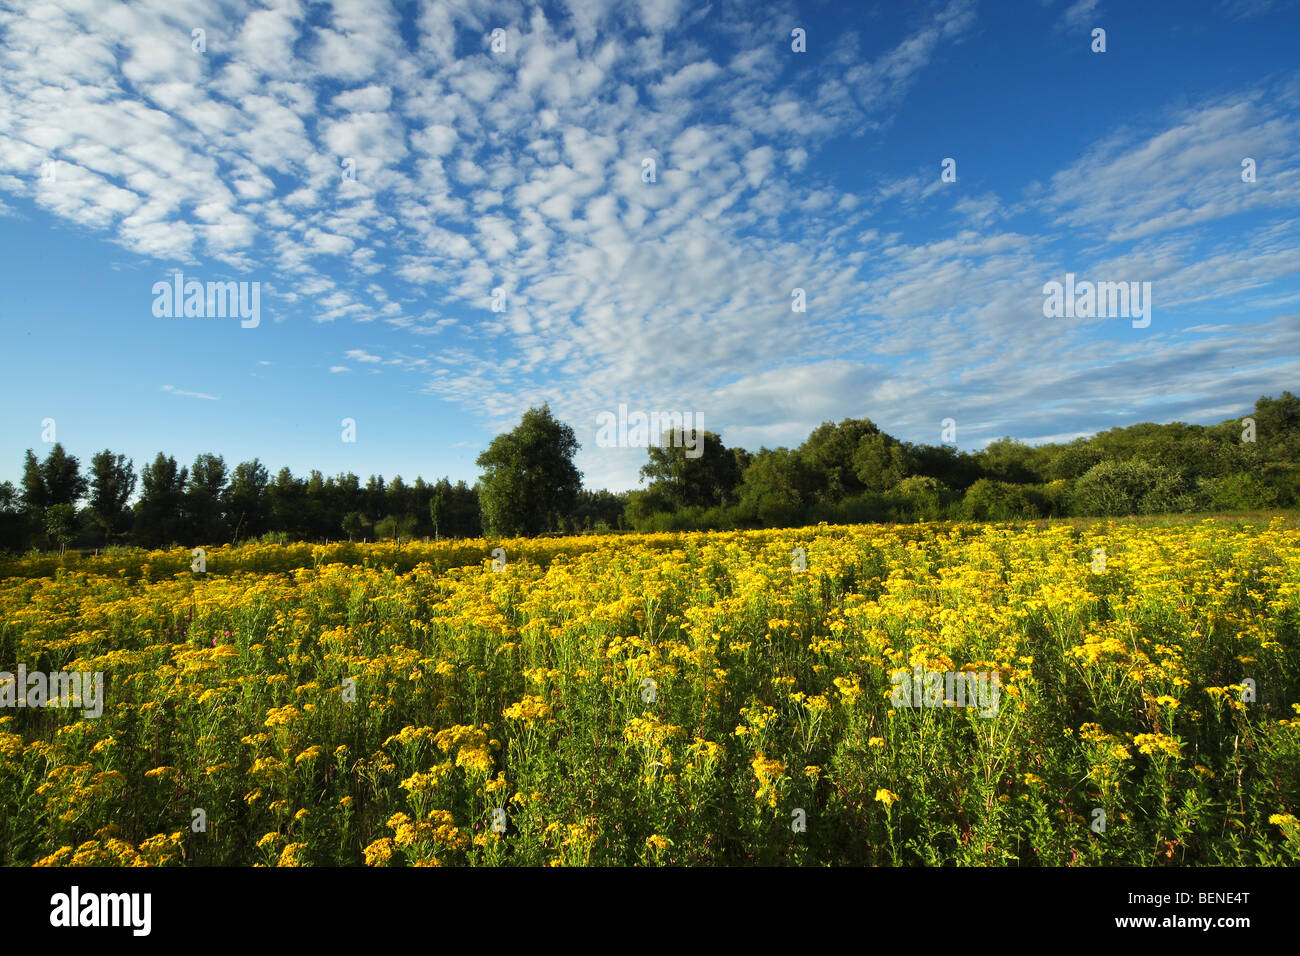 Field with Common ragwort (Senecio jacobaea) Stock Photo